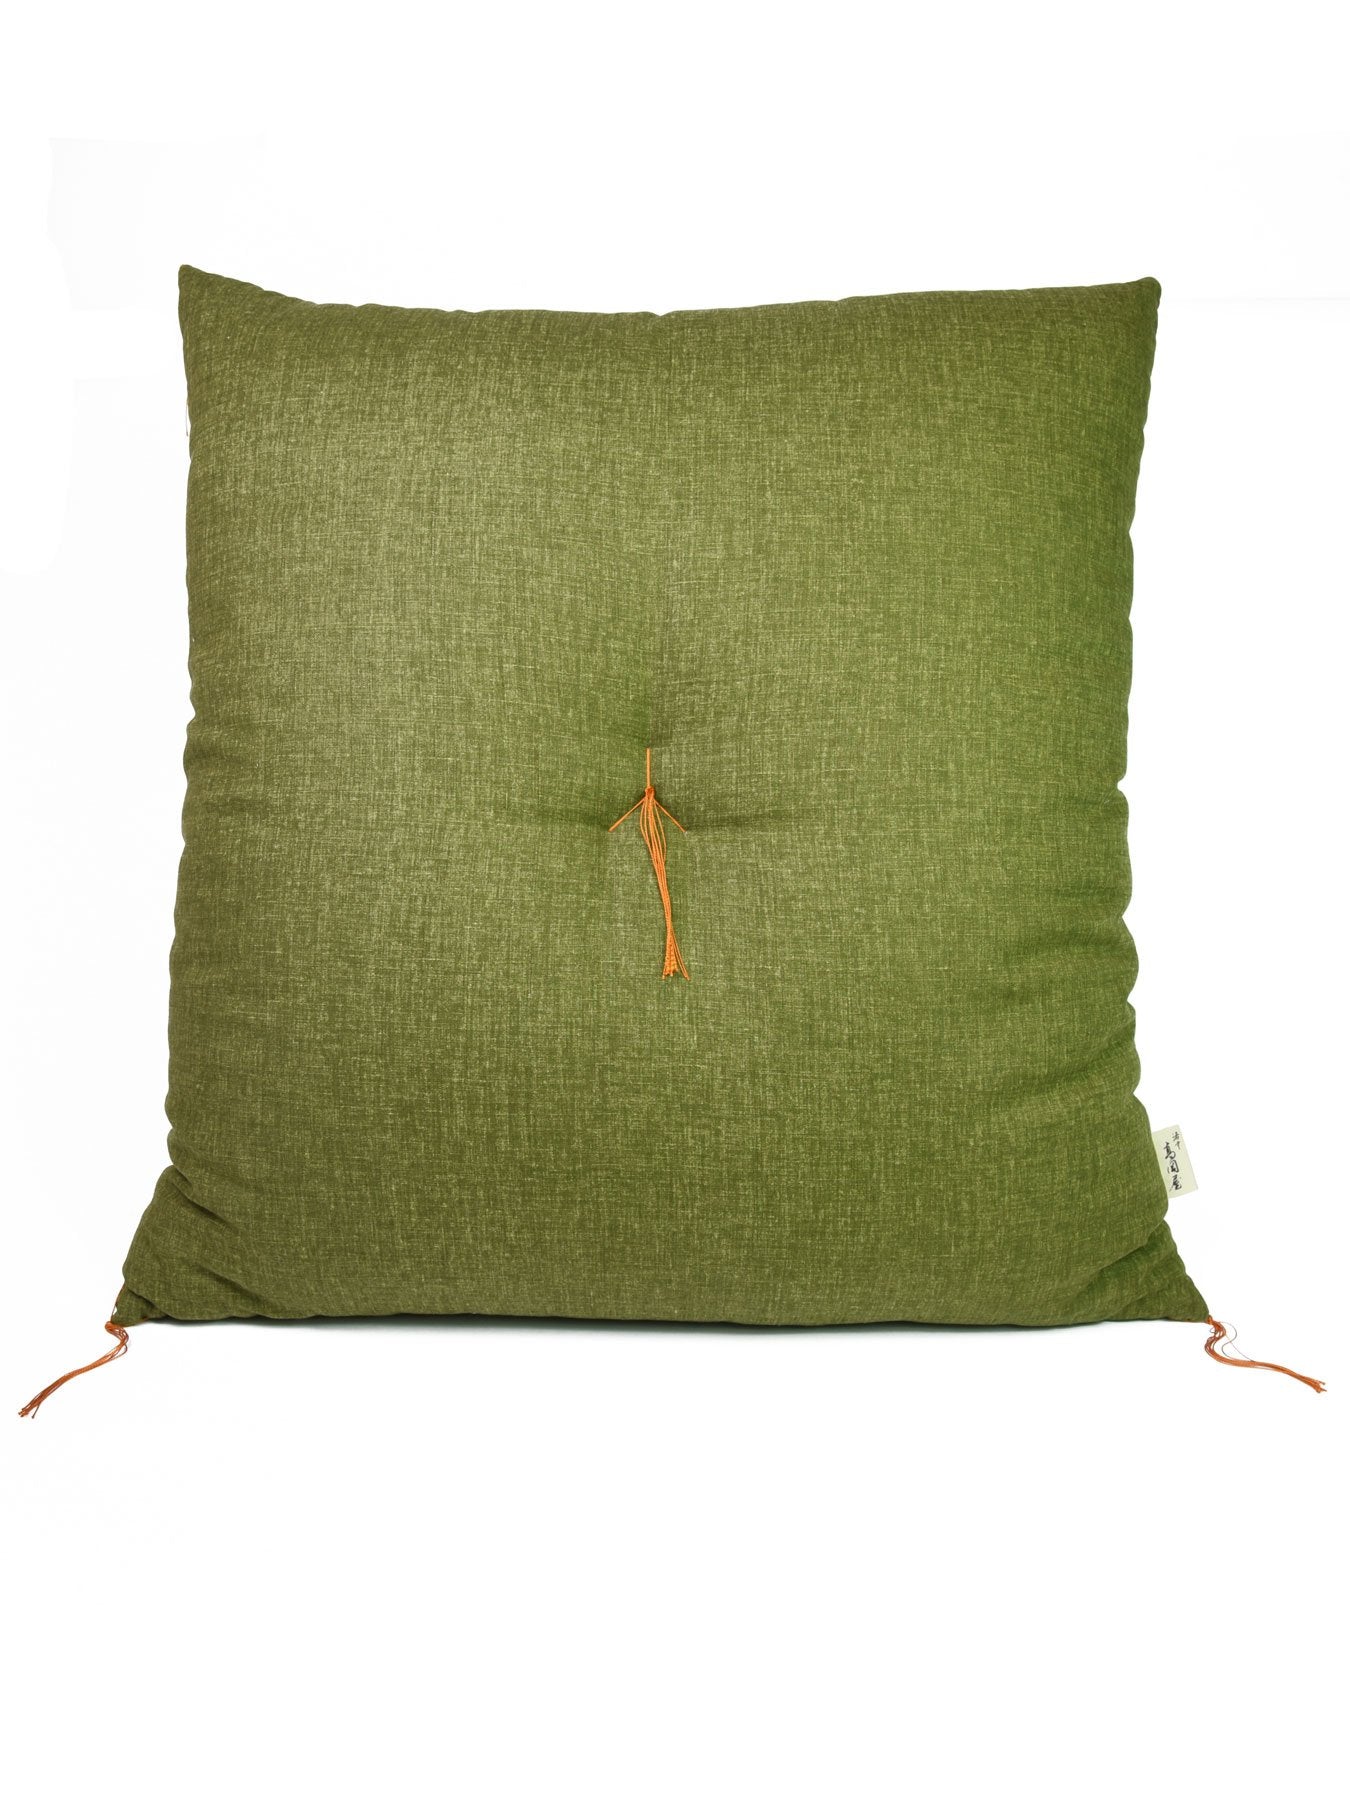 Matcha Green Zabuton Cushion